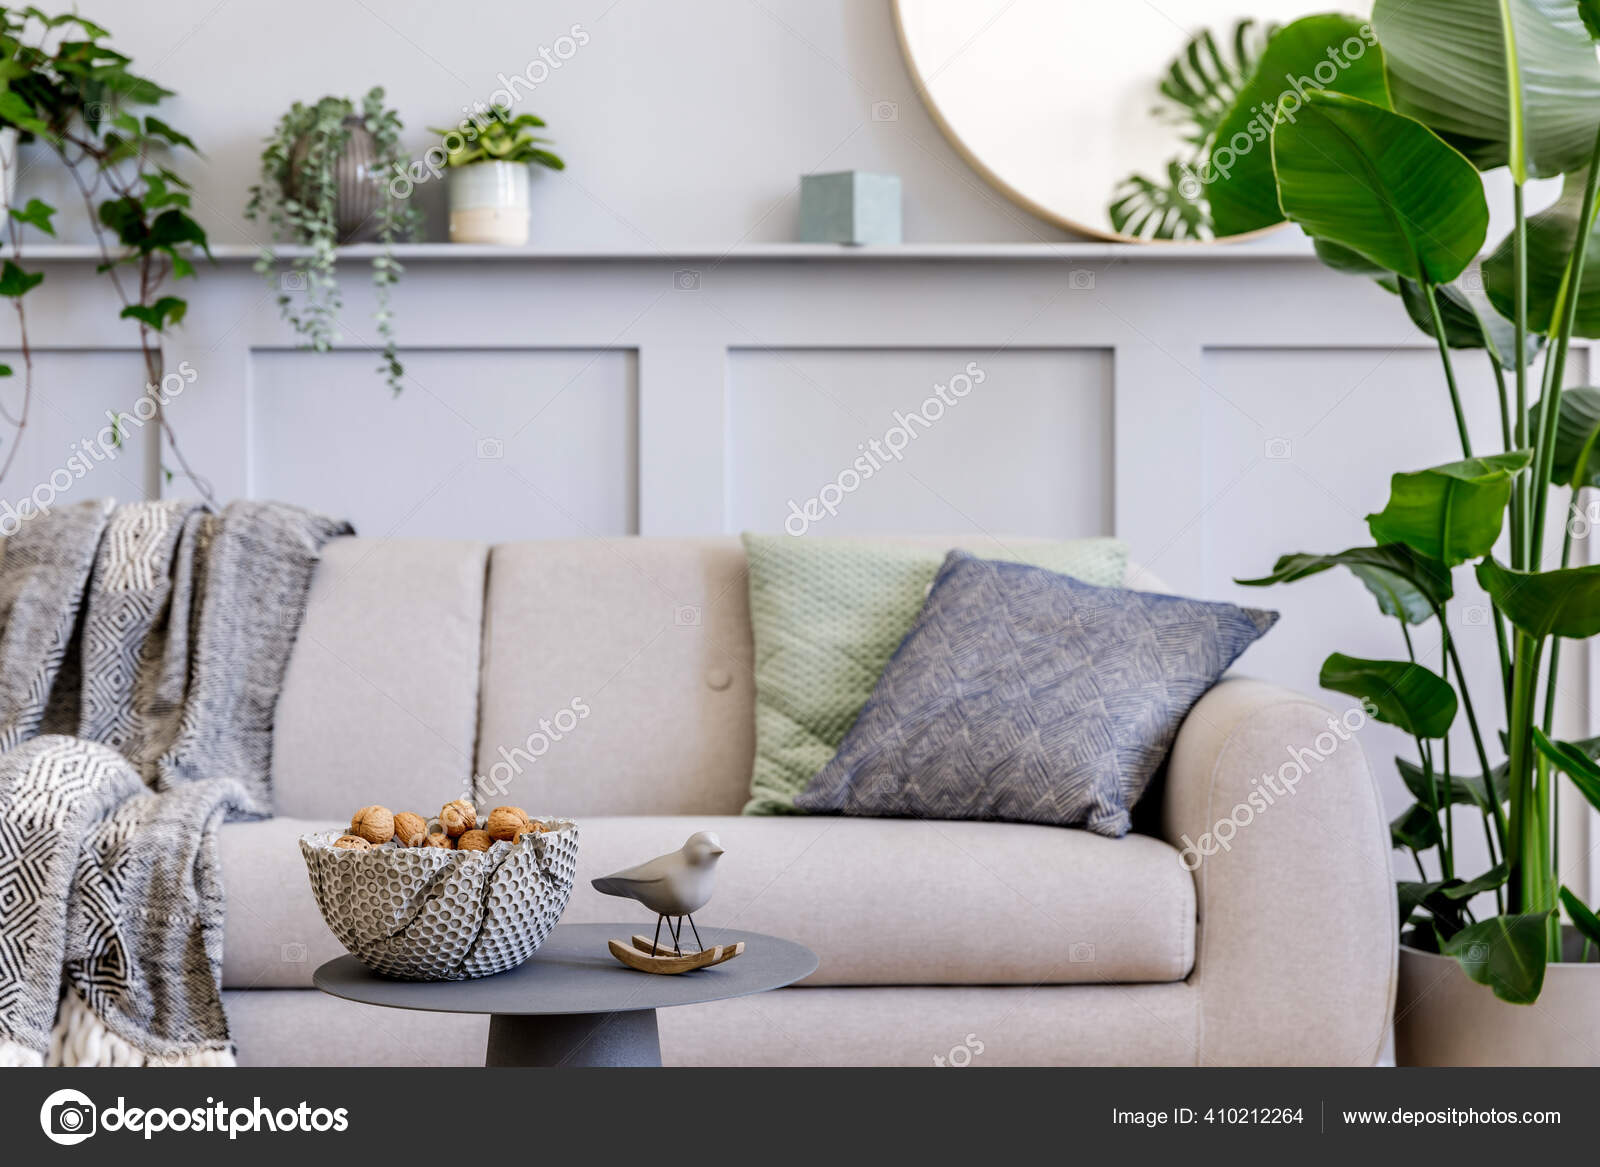 https://st4.depositphotos.com/22220764/41021/i/1600/depositphotos_410212264-stock-photo-interior-design-scandinavian-living-room.jpg